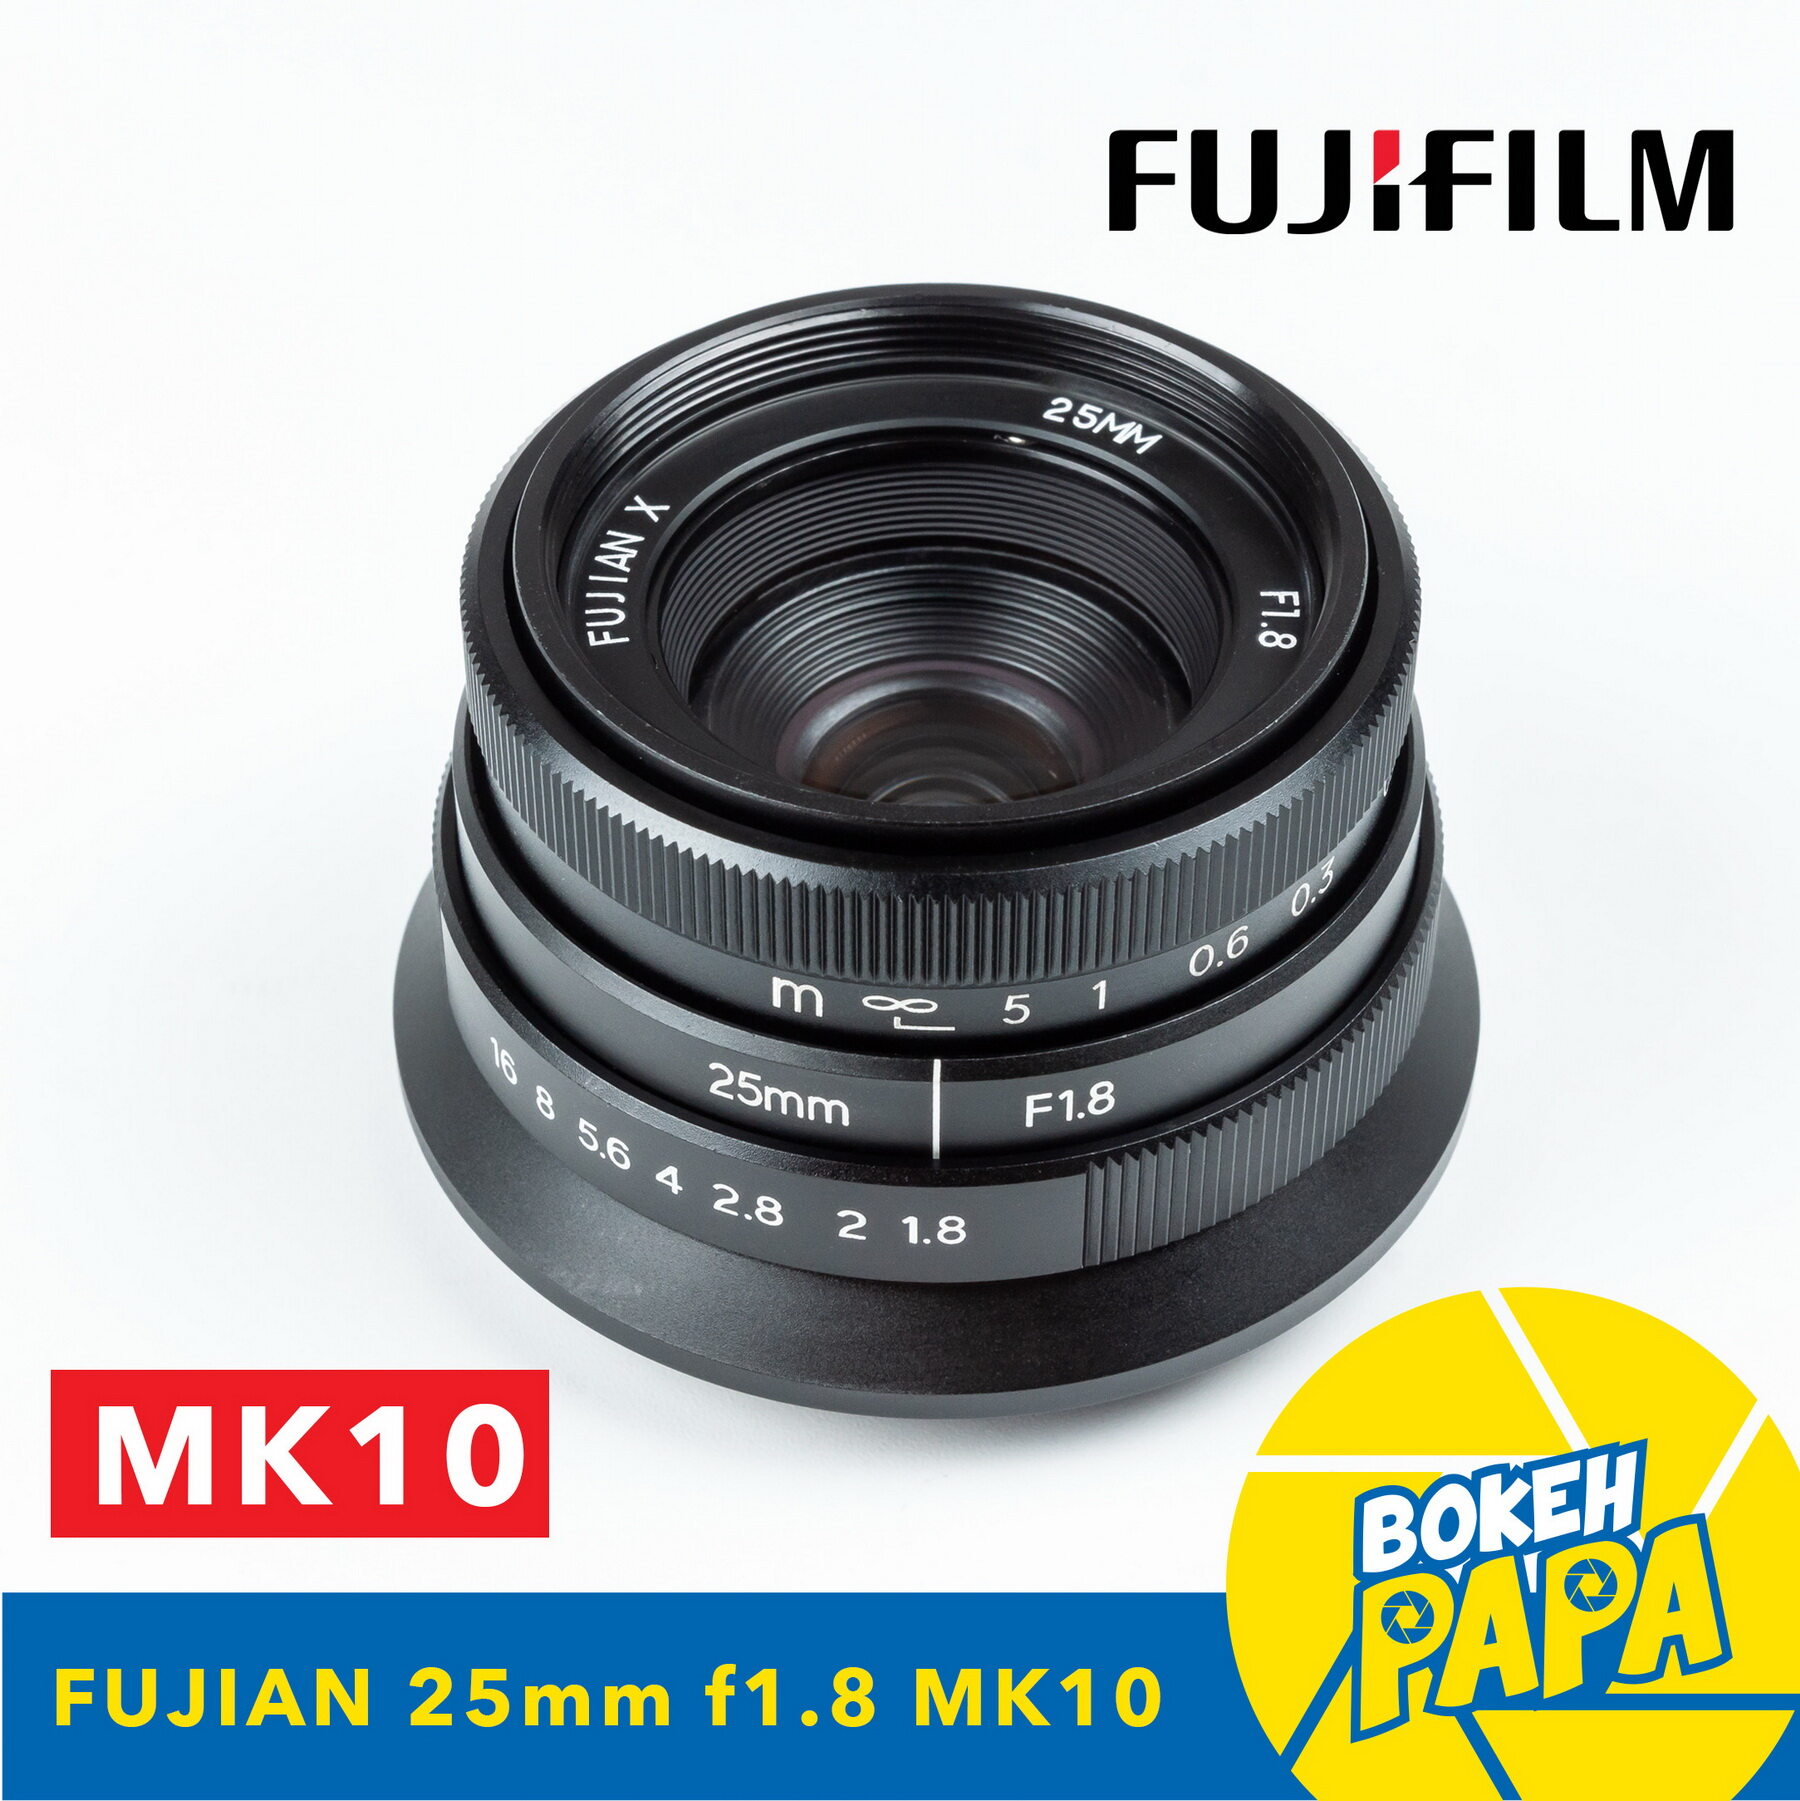 New Fujian X 25mm F1.8 Mark10 สำหรับใส่กล้อง Fuji Mirrorless ได้ทุกรุ่น เลนส์หน้าชัดหลังเบลอ ( เลนส์มือหมุน ) ( เลนส์ละลายหลัง ) ( สำหรับ กล้อง ฟูจิ ) ( 25 mm )